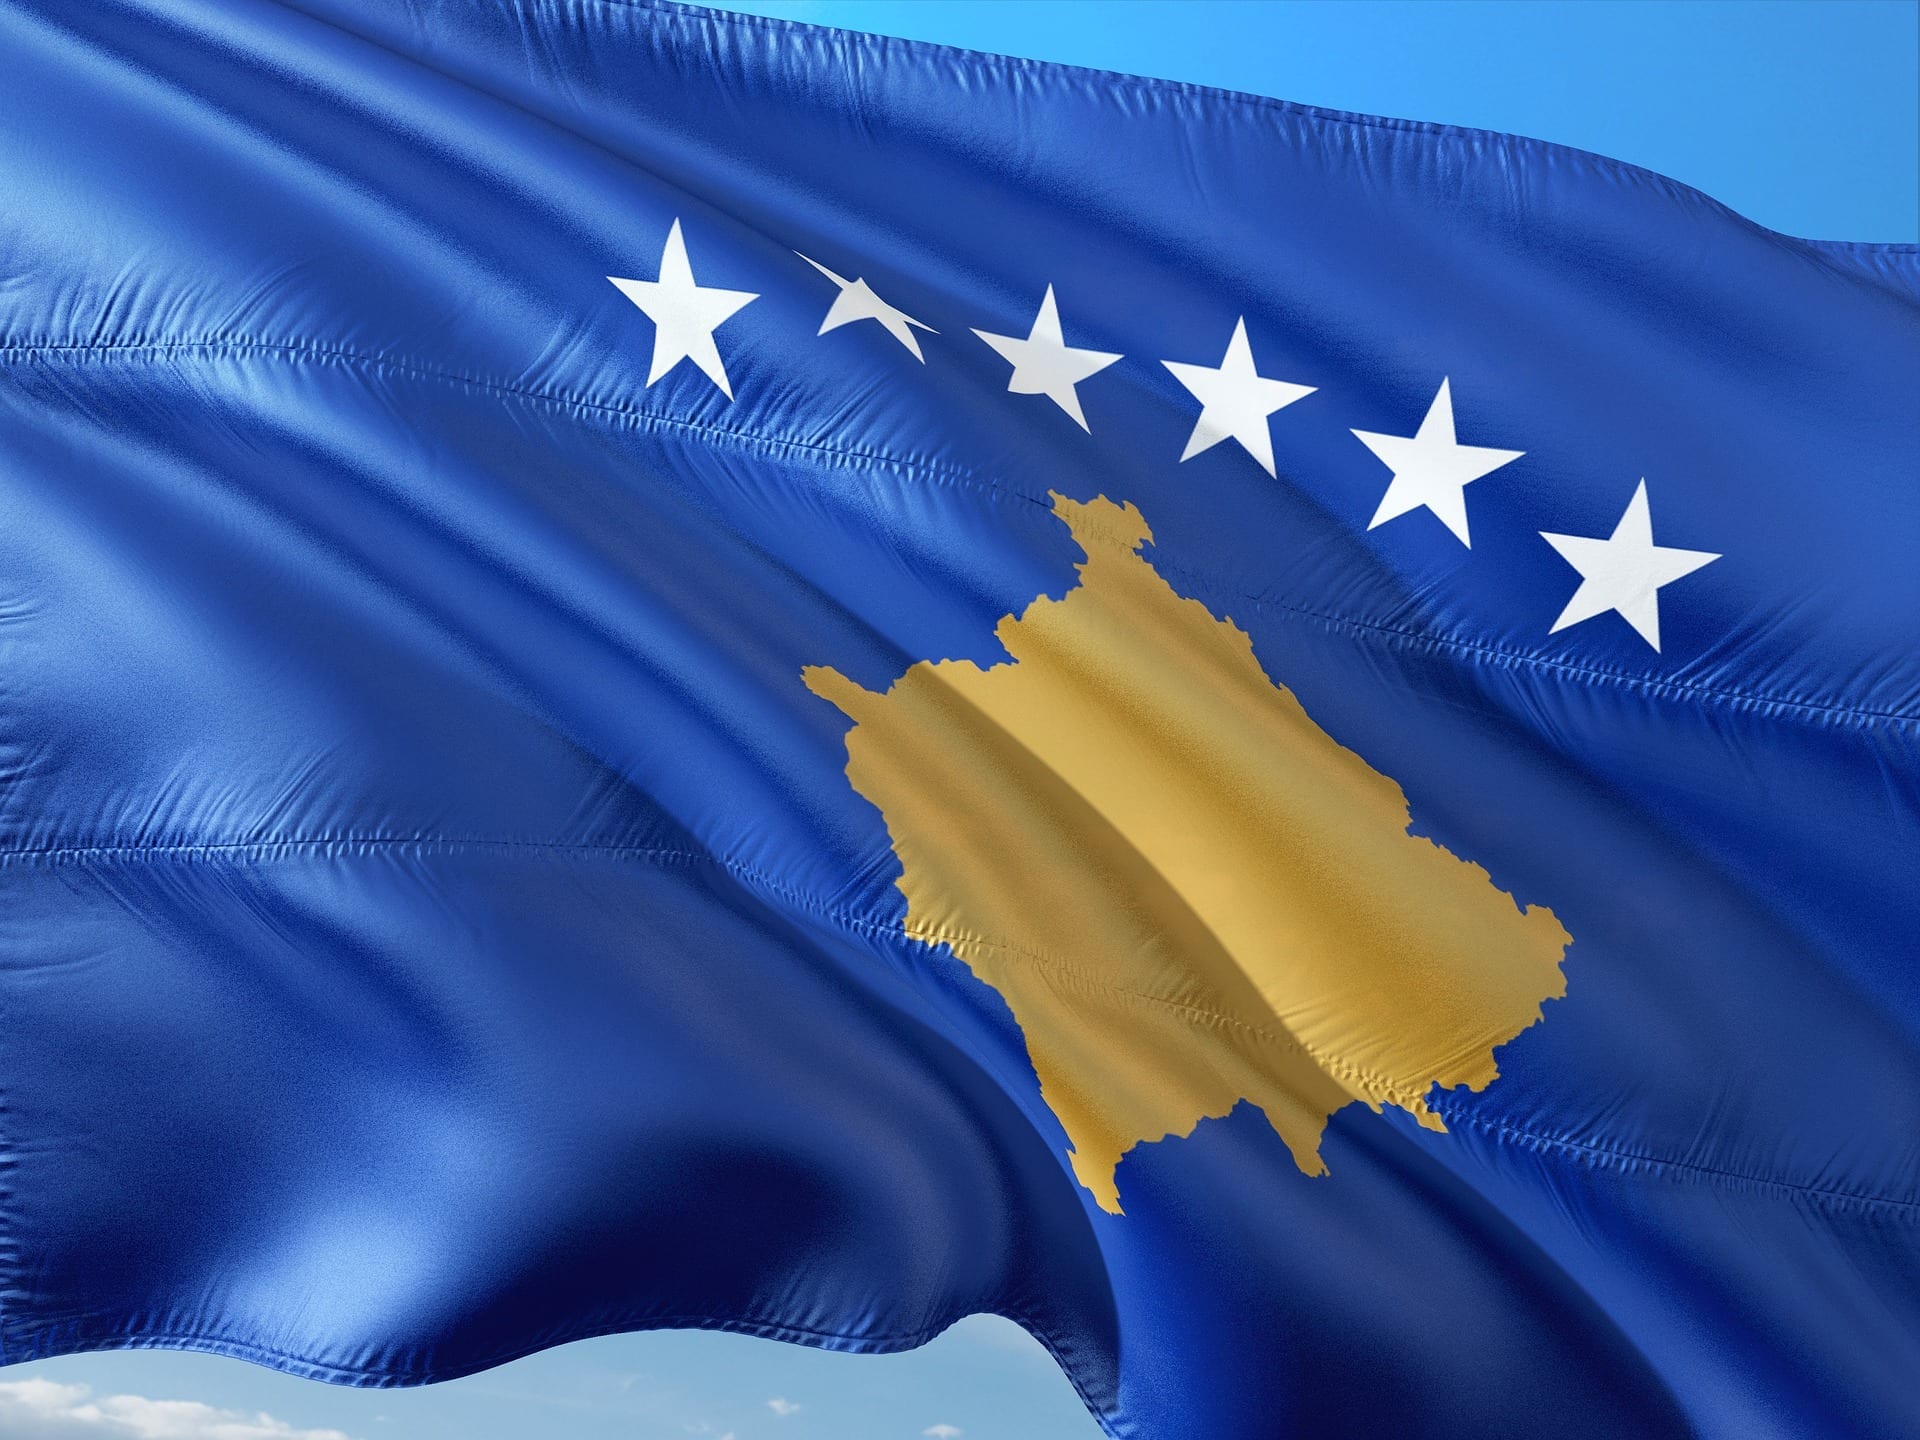 Kosovo 2021: come cambierà il Paese dopo le elezioni?